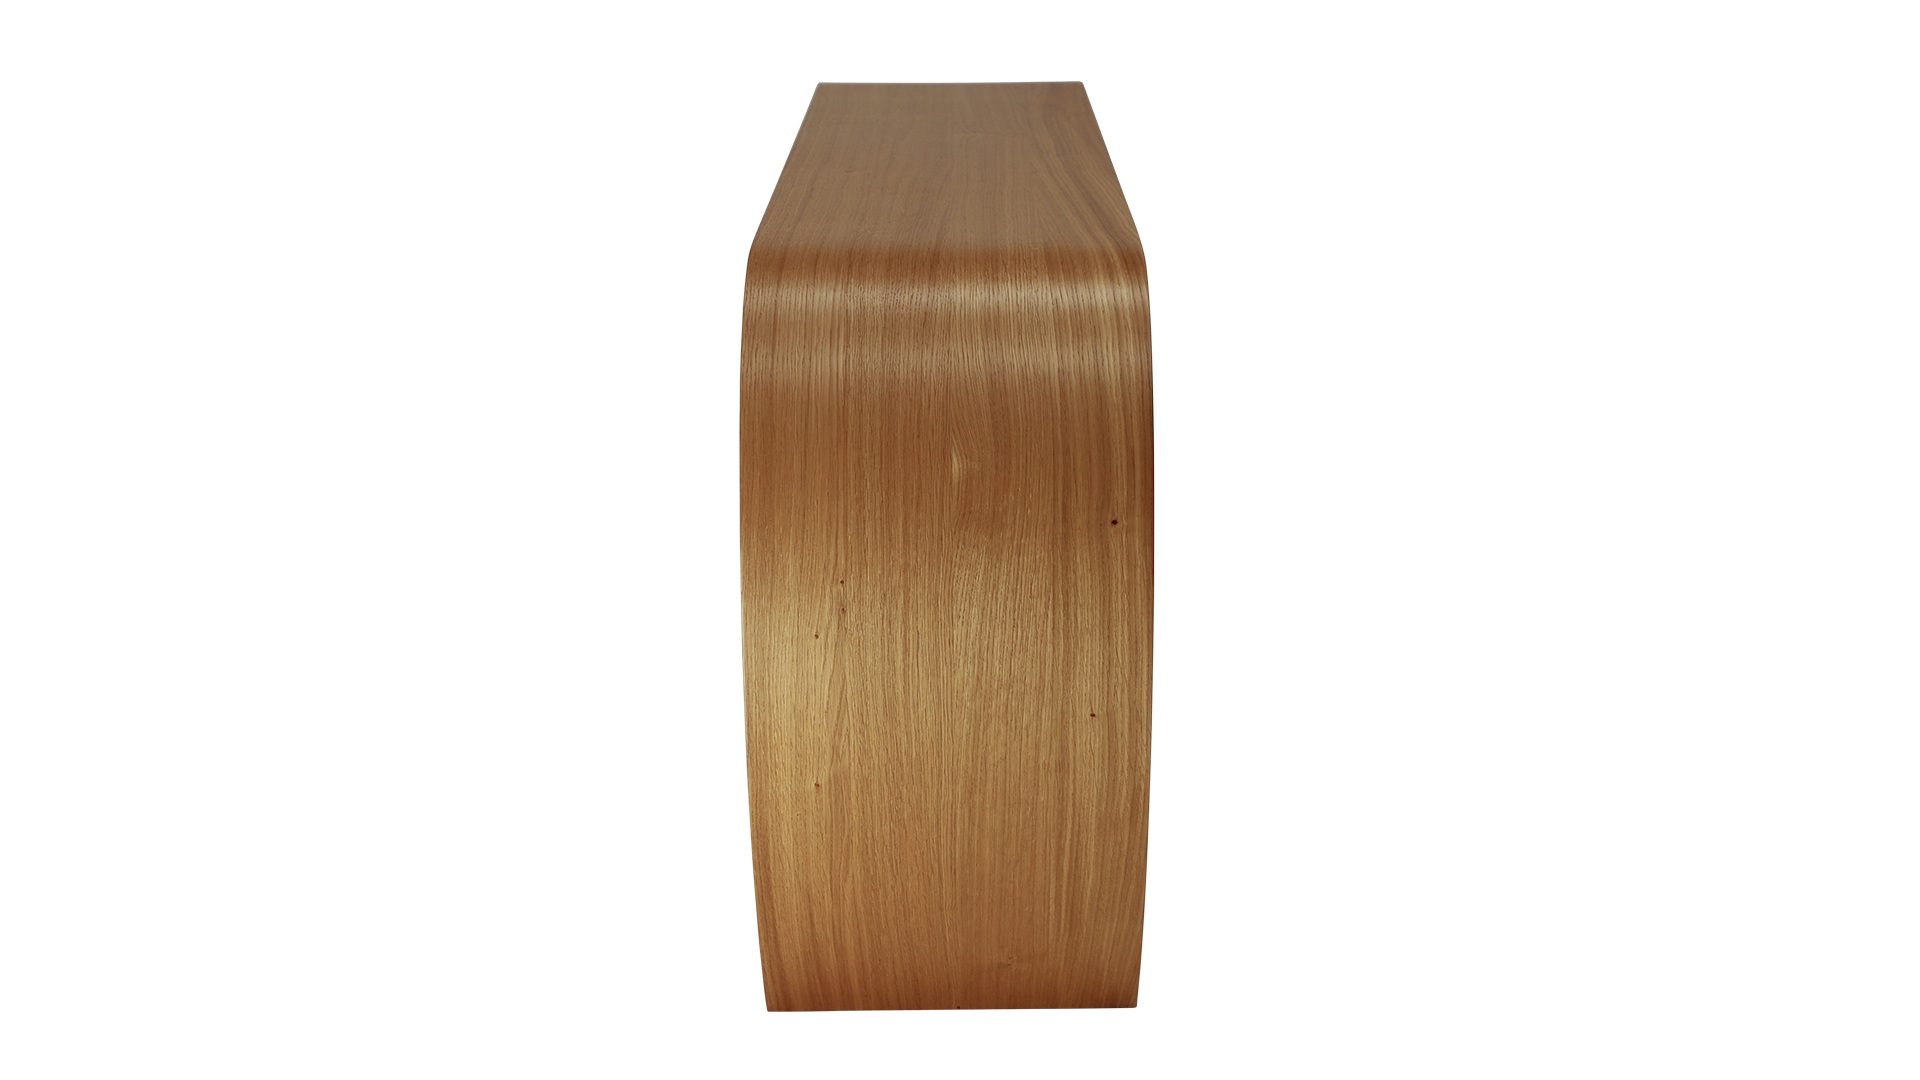 Das Sideboard Sidebow überzeugt mit seiner besonderen Form. Gefertigt wurde das Sideboard aus Echtholzfurnier. Die Farbe ist Asteiche. Es ist ein Produkt der Marke Jan Kurtz und hat eine Breite von 123 cm.